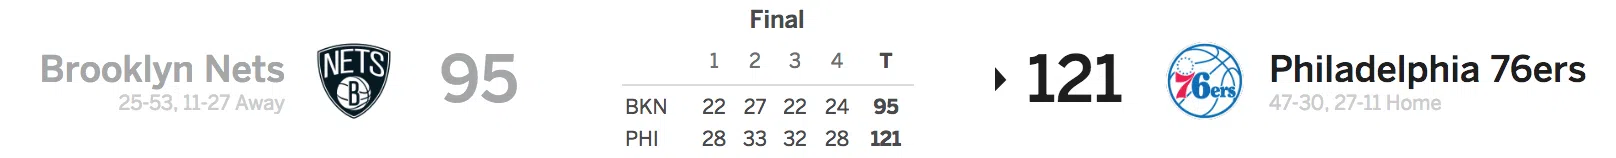 Brooklyn Nets vs Philadelphia 76ers 4-3-18 Score